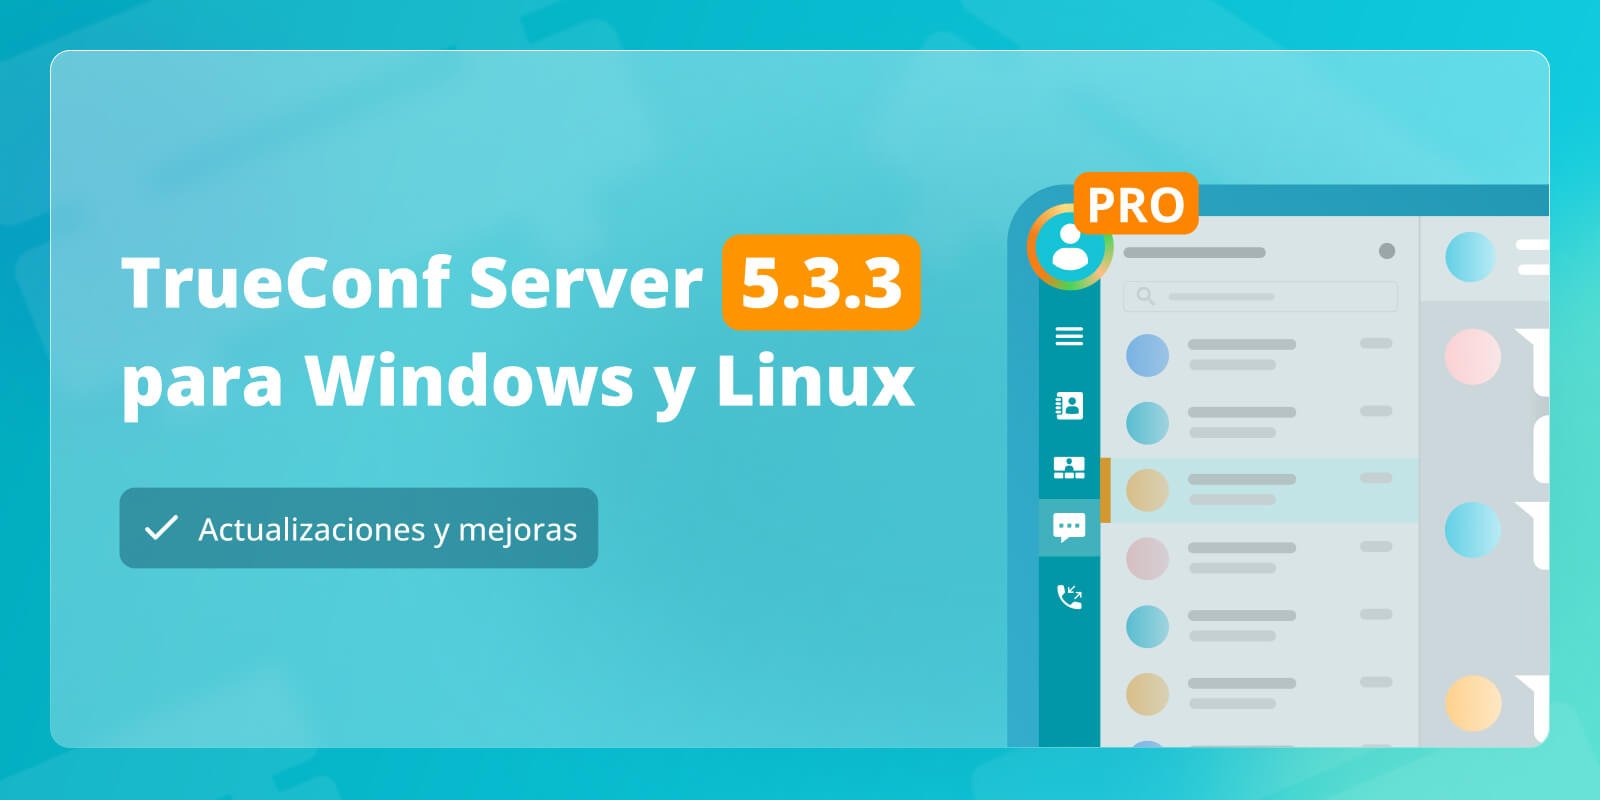 TrueConf Server 5.3.3: actualizaciones y mejoras 1